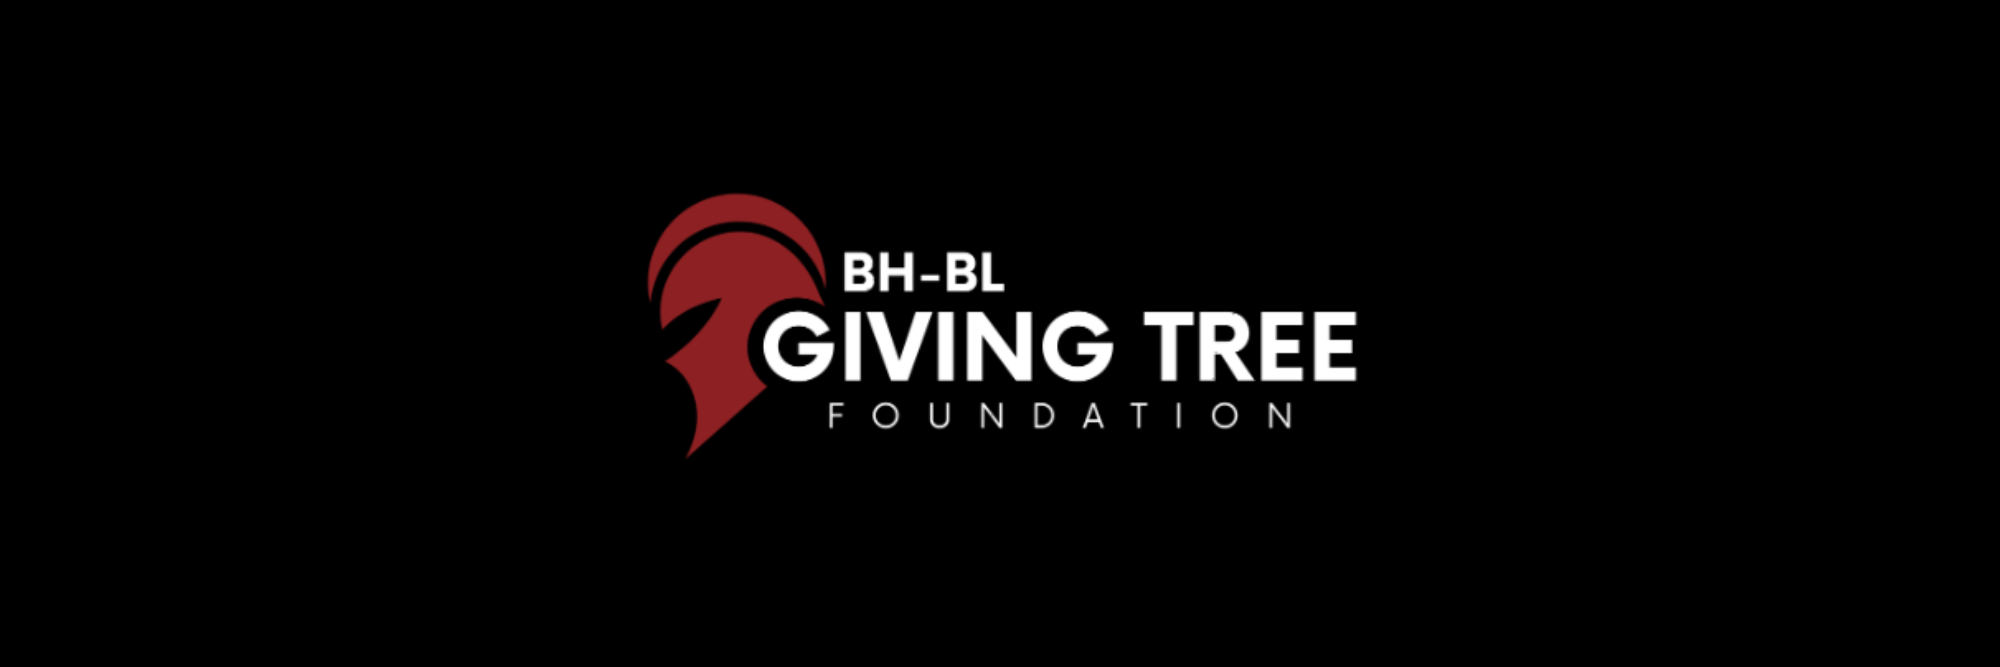 BH-BL Giving Tree Foundation Logo Blog Header